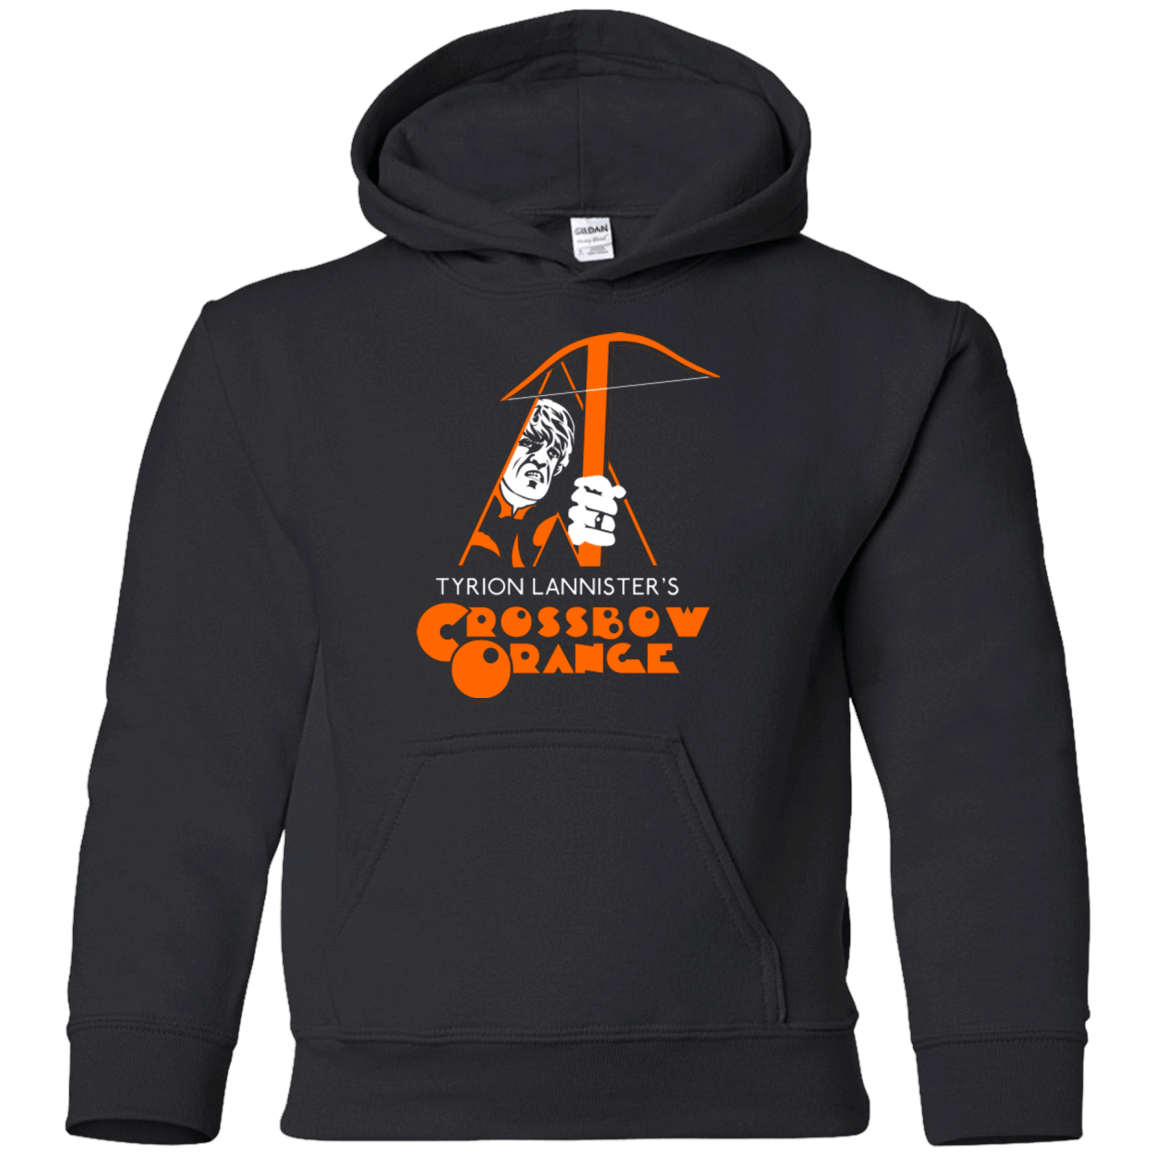 Sweatshirts Black / YS Crossbow Orange Youth Hoodie